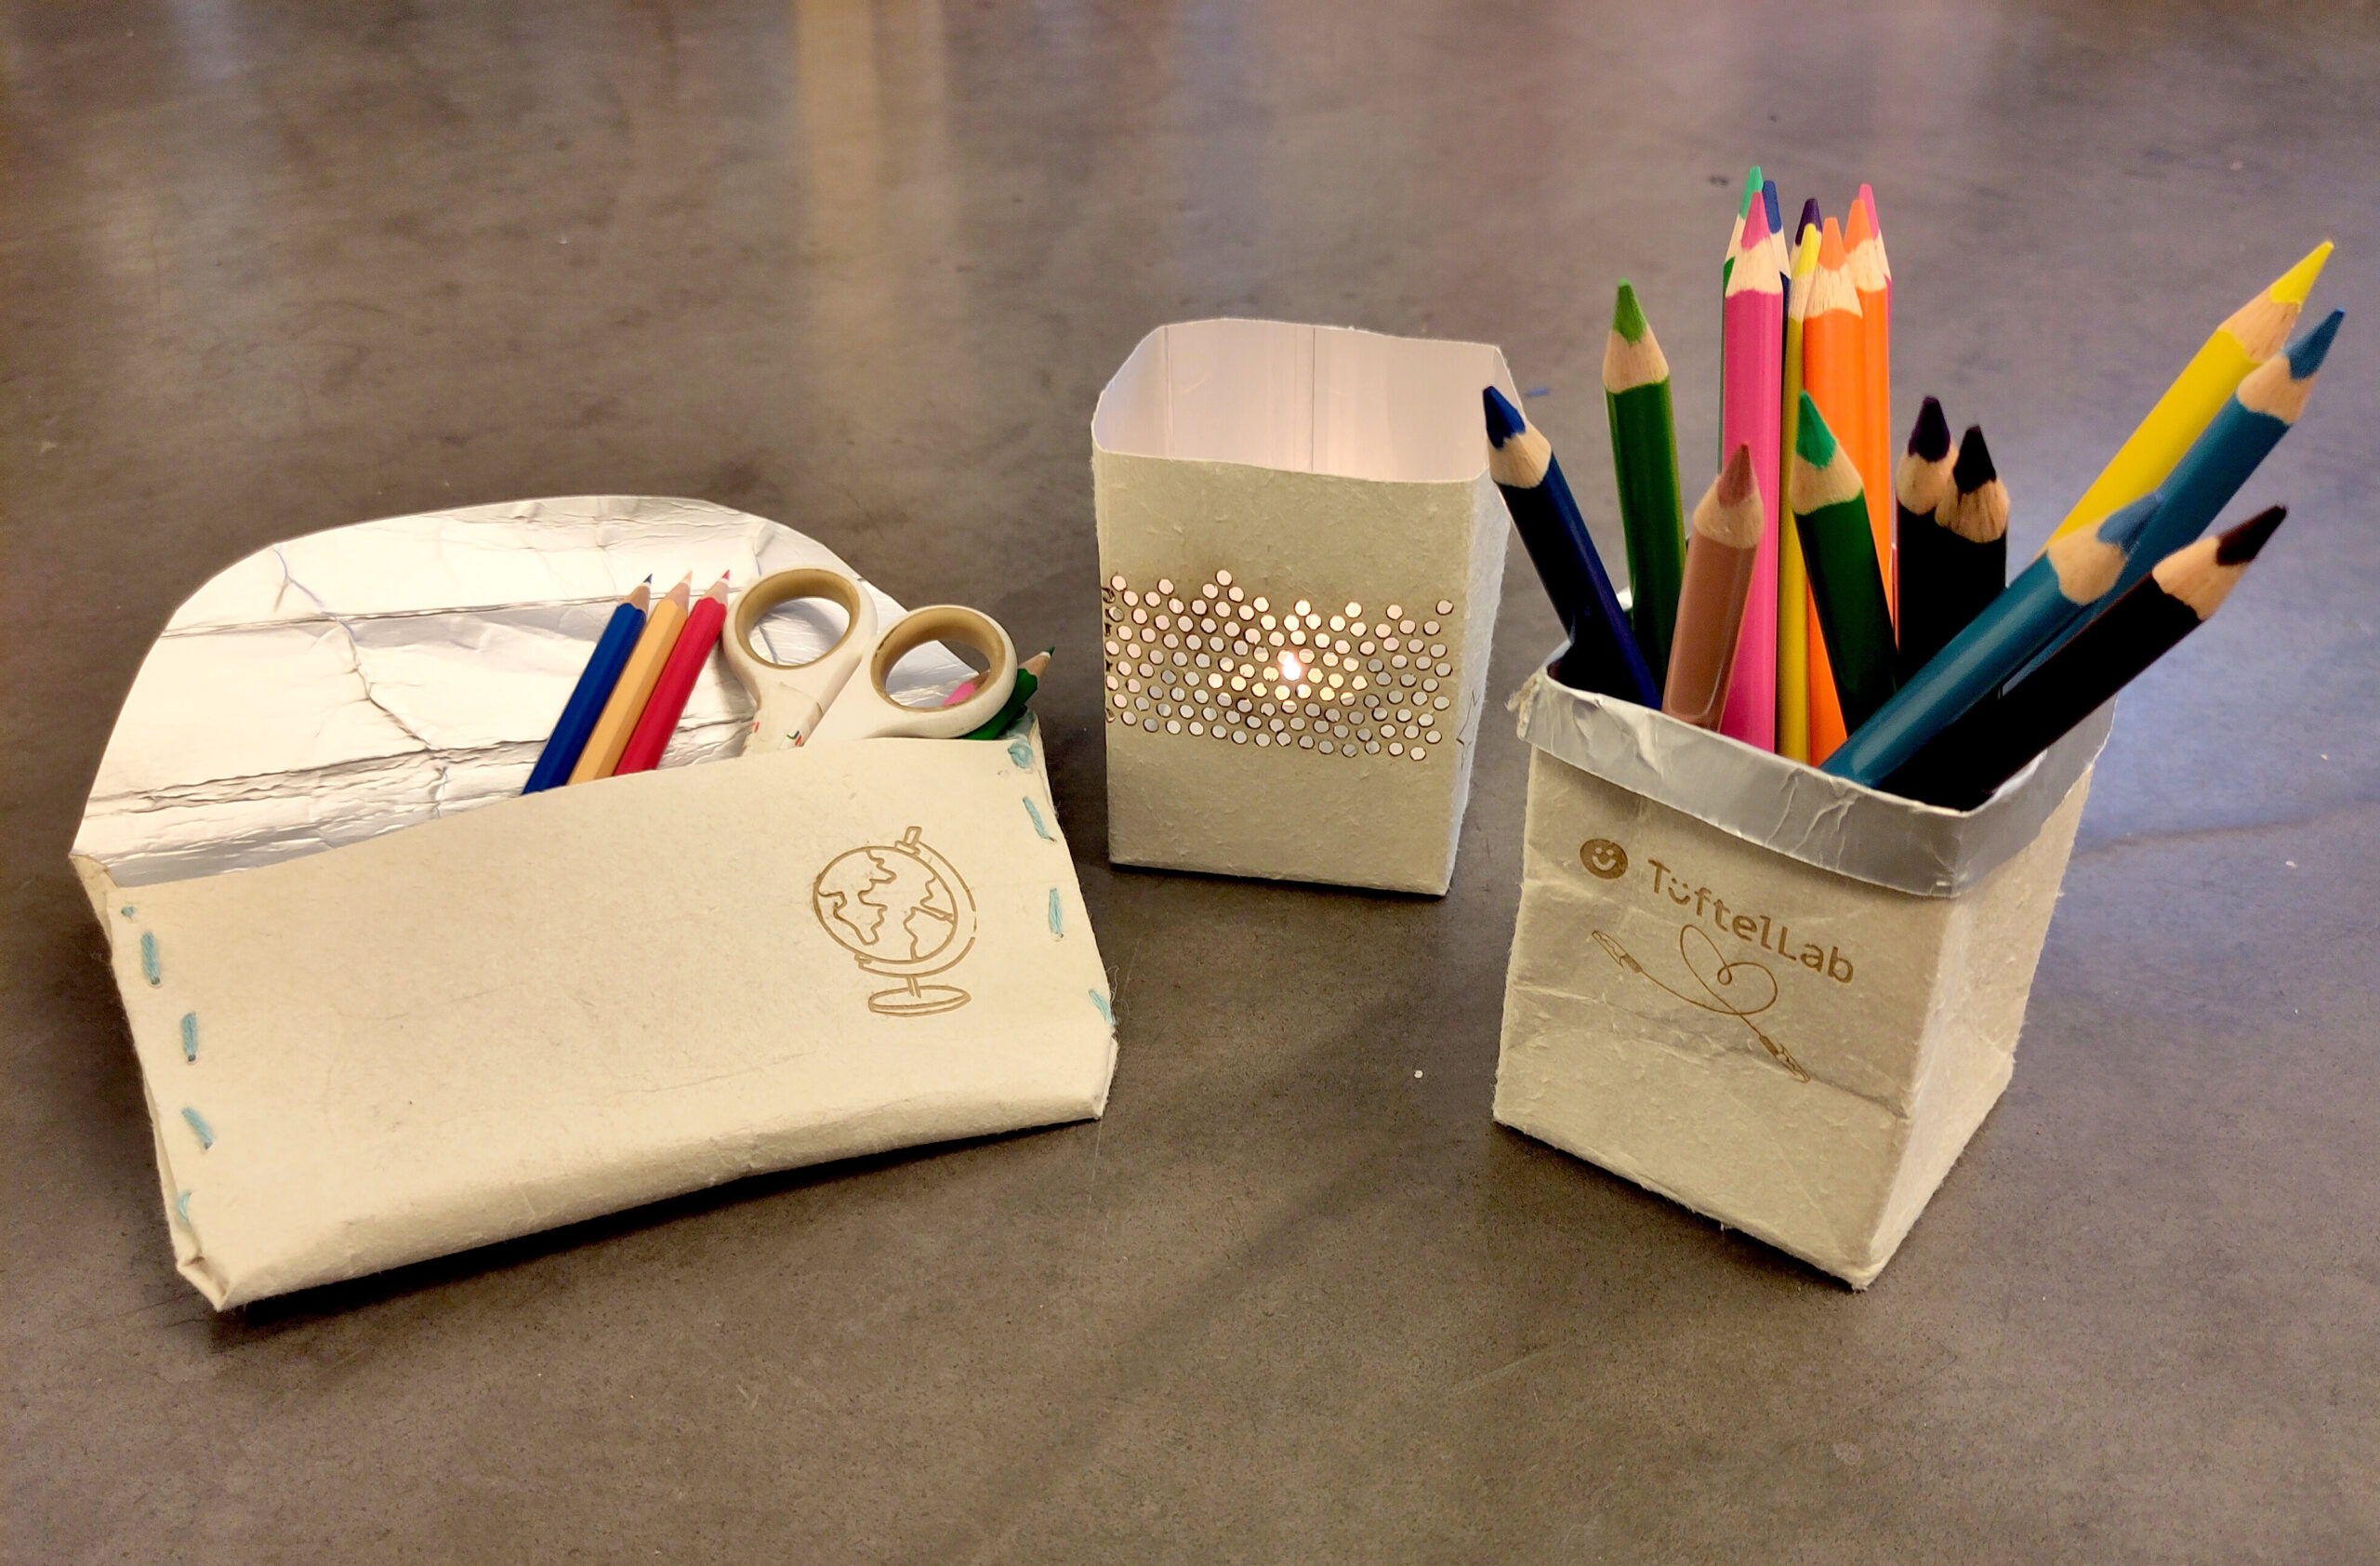 Ein Stifthalter, eine Federtasche und ein Teelicht-Halter aus gebrauchten Tetrapaks, mit lasergravuren verziert.